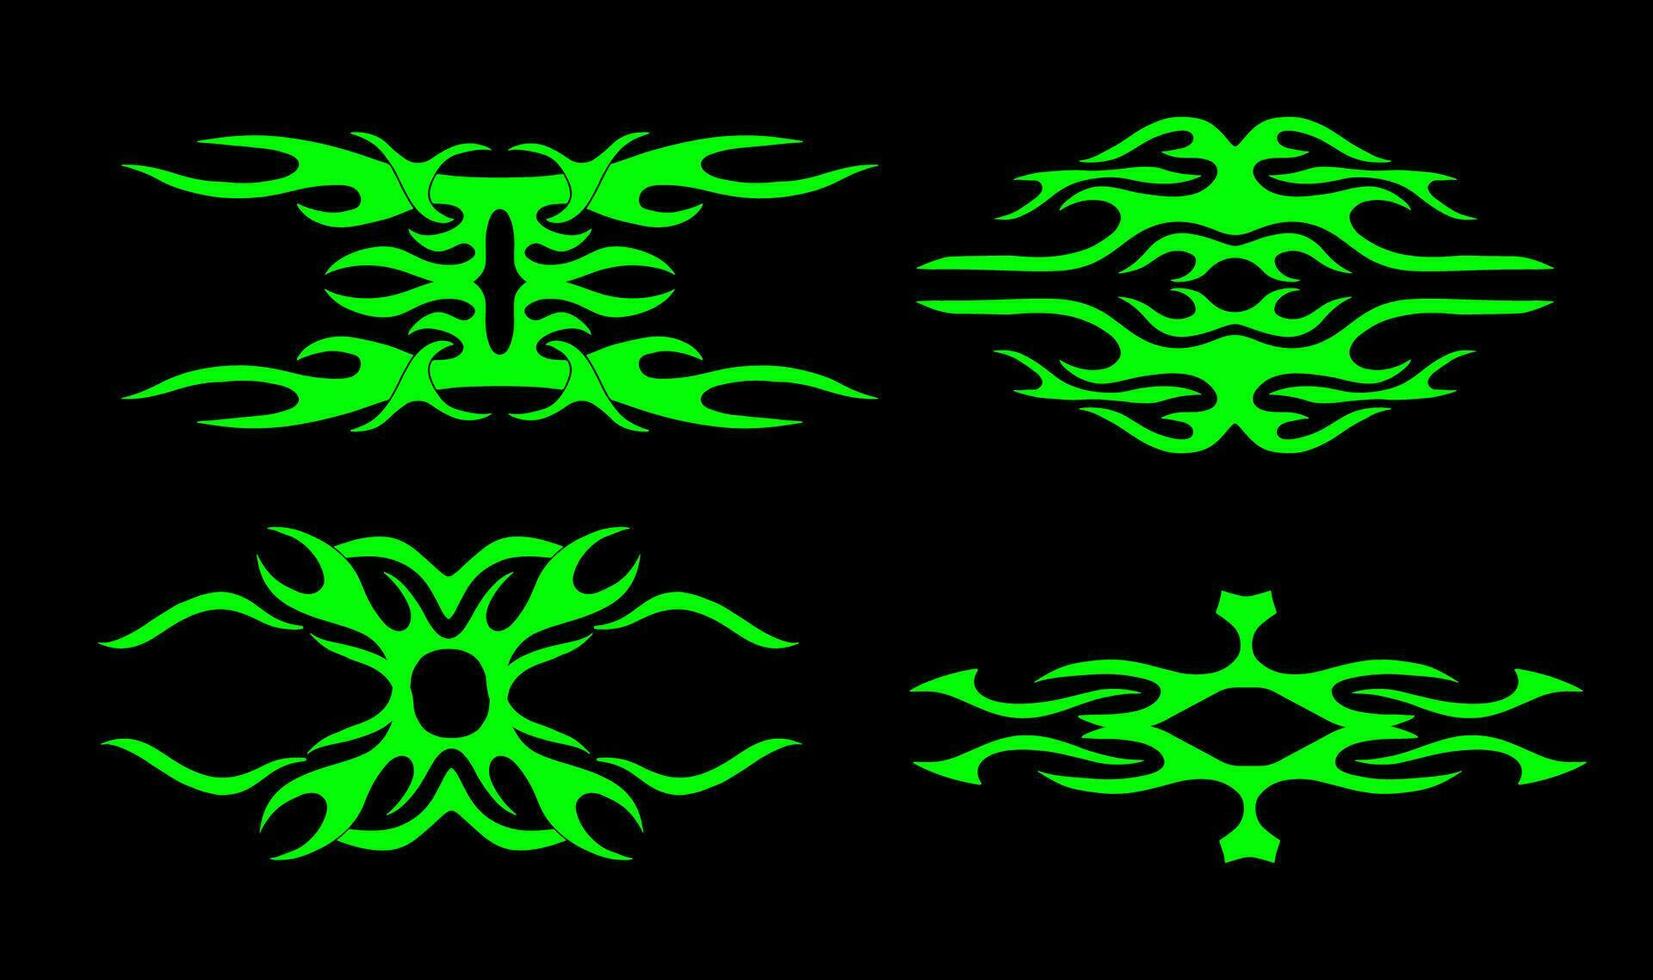 Neo Stammes- oder Cyber Sigilismus gestalten einstellen zum Tätowierung, Strassenmode usw Hand gezeichnet symmetrisch Vektor Illustration.